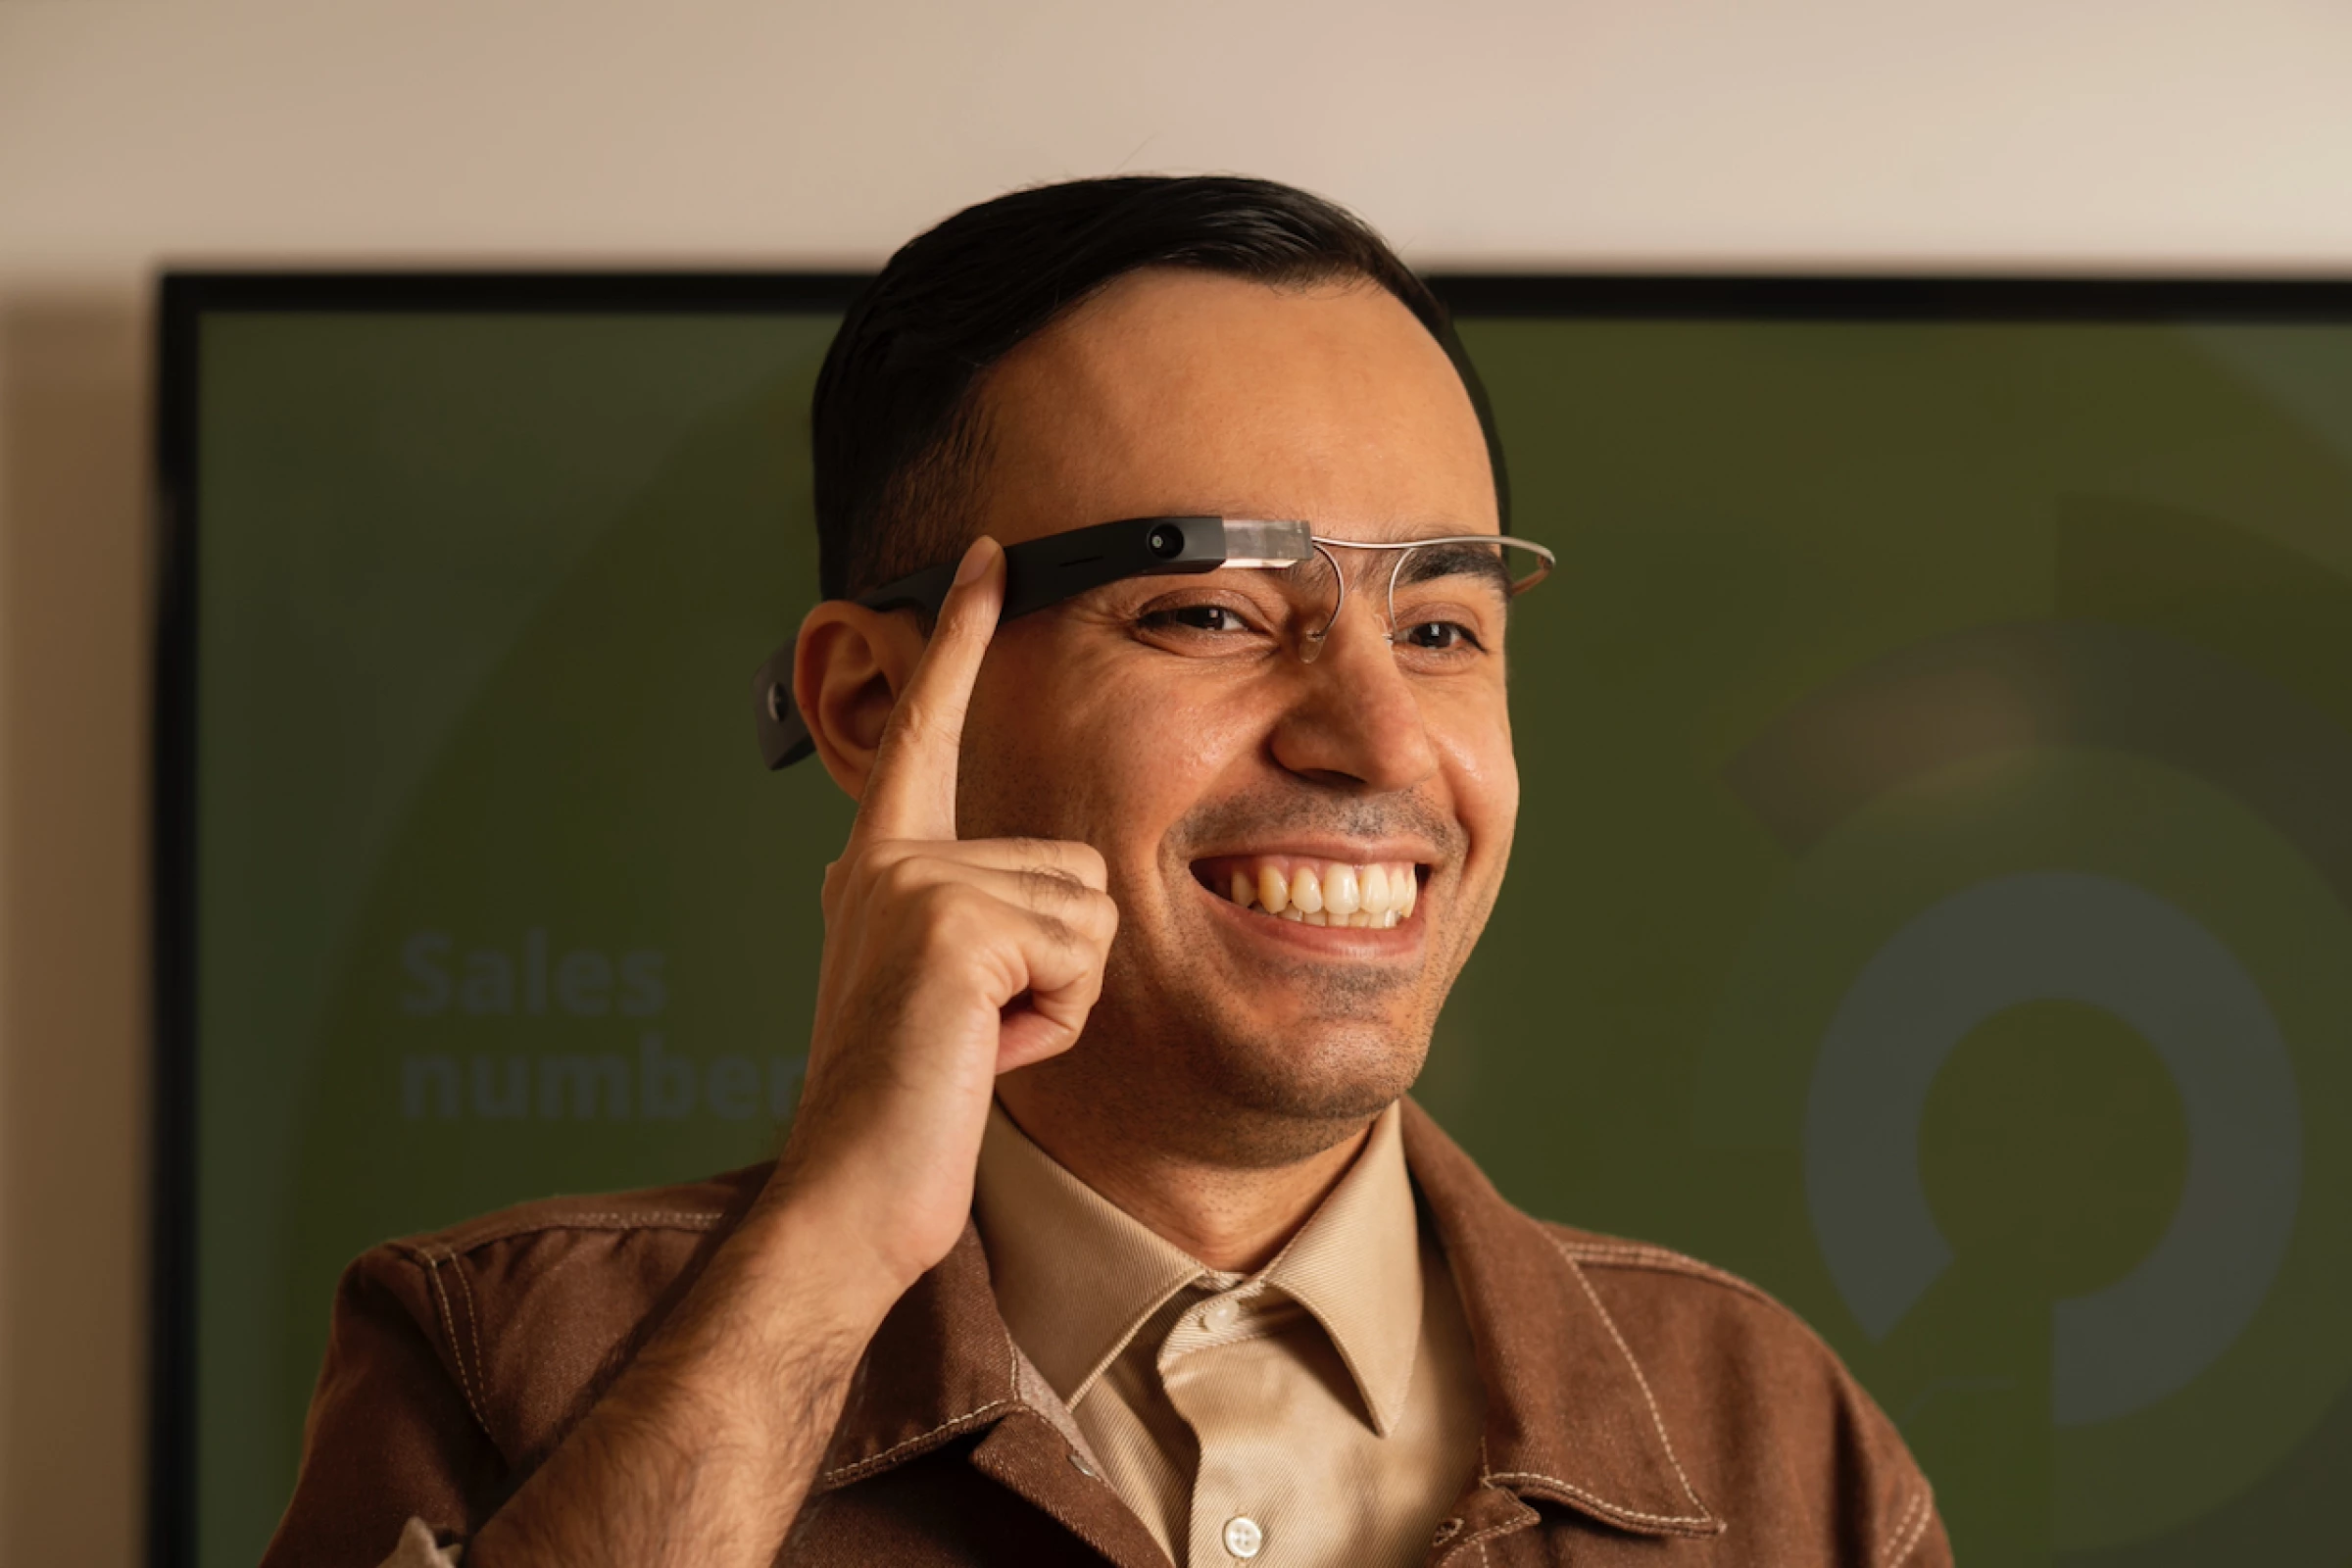 Envision Glasses แว่นตา AI อัจฉริยะ เสมือนเป็นดวงตาให้แก่ผู้พิการทางสายตา